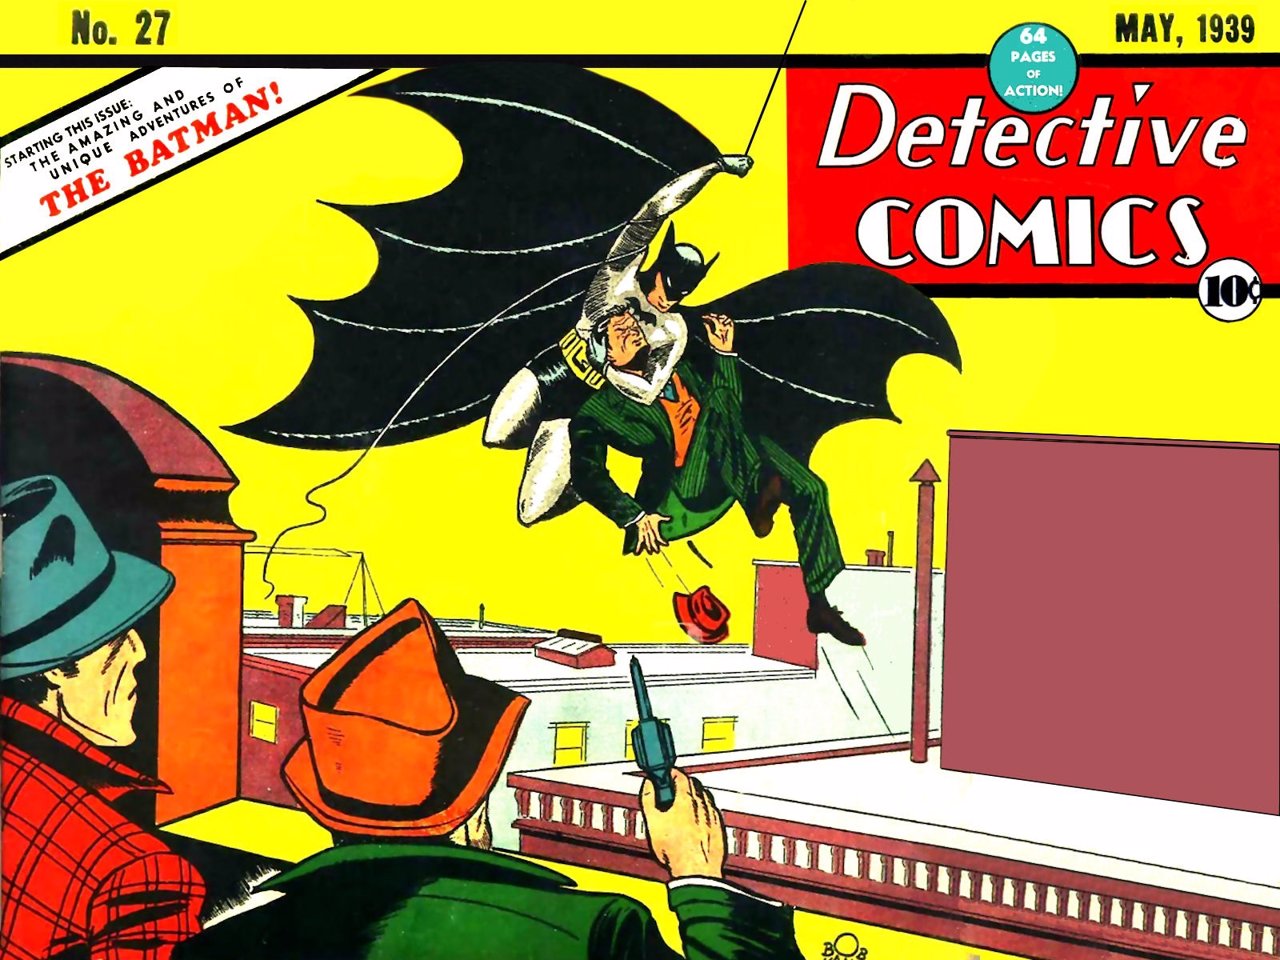 Primer número de Batman